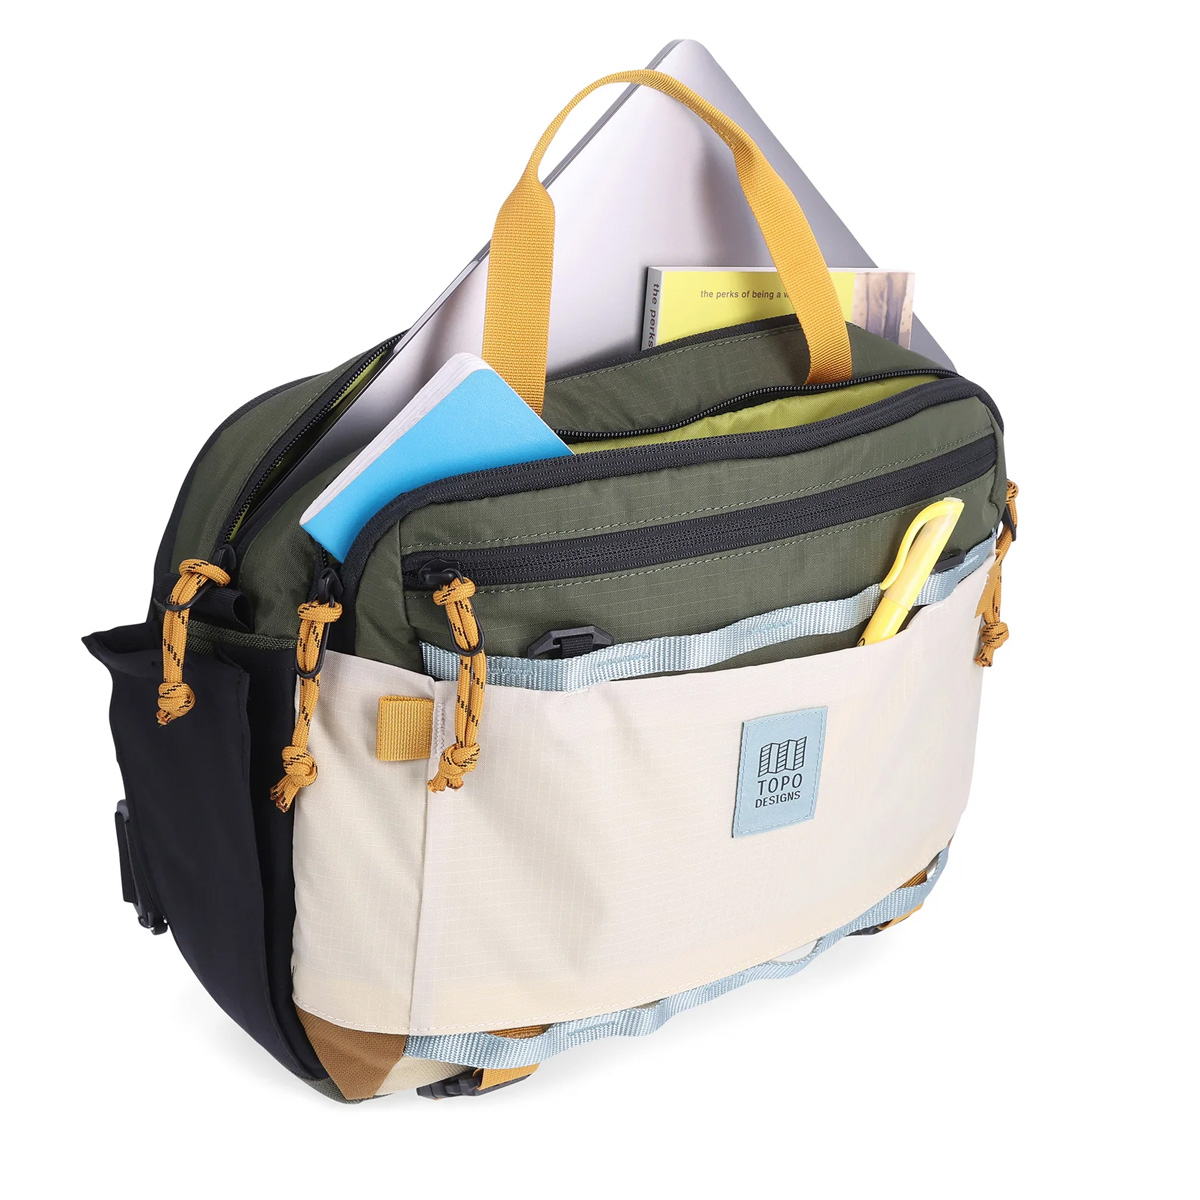 Topo Designs Mountain Cross Bag Bone White/Olive, ideale sling bag in messengerstijl voor dagelijks gebruik en nog veel meer